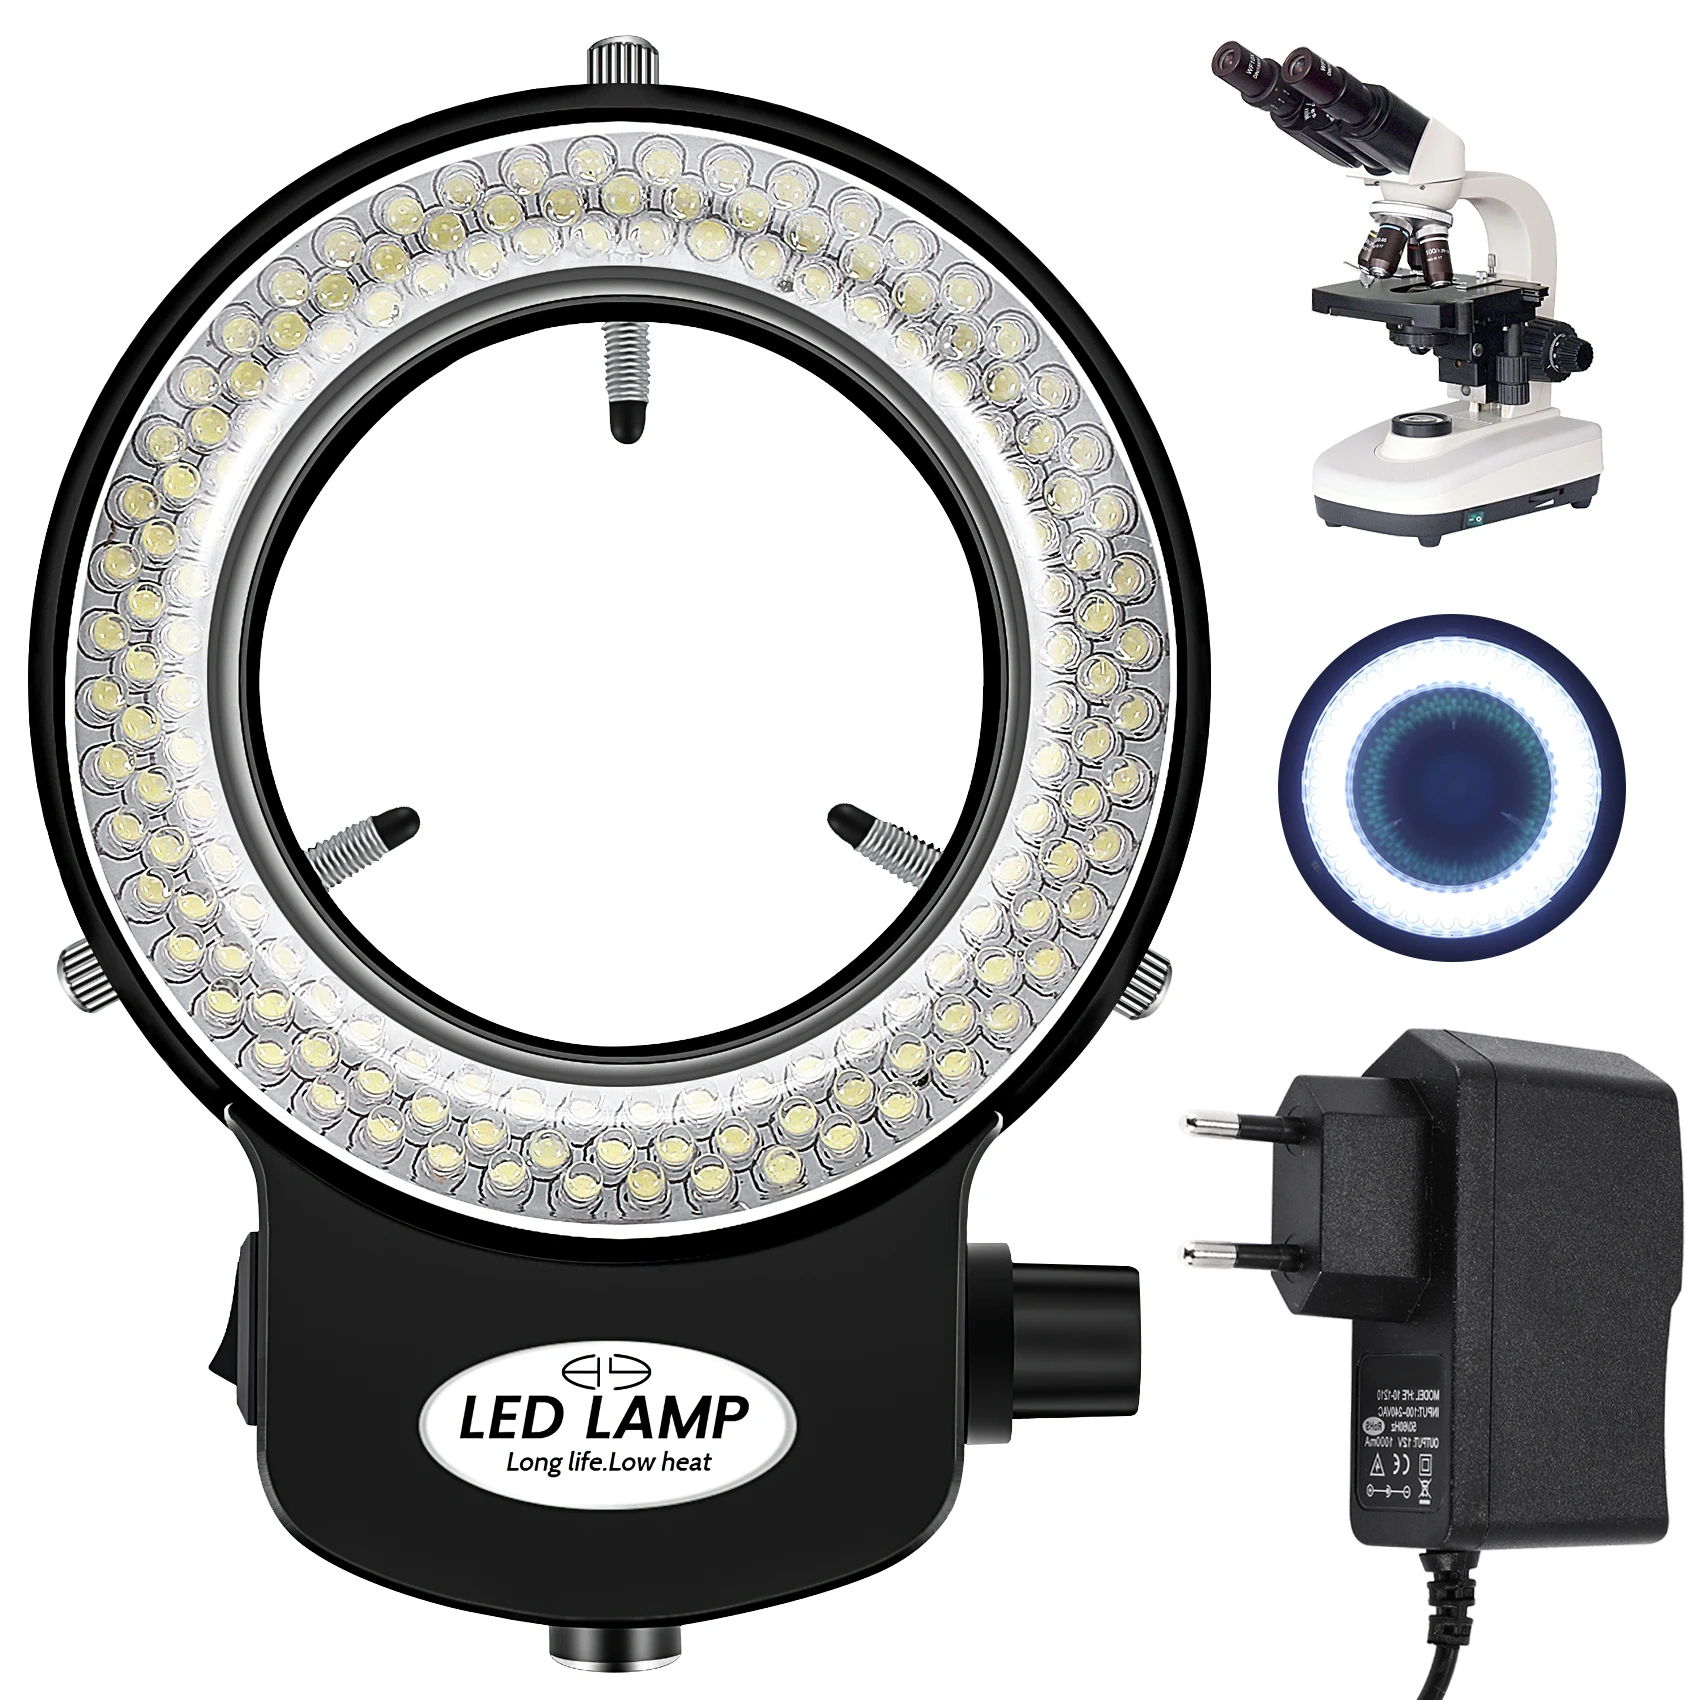 144 LED miniszkóp gyűrű fény gyűrű fény 0 - 100% állítható lámpa miniszkóp gyűrűfényhez - 2